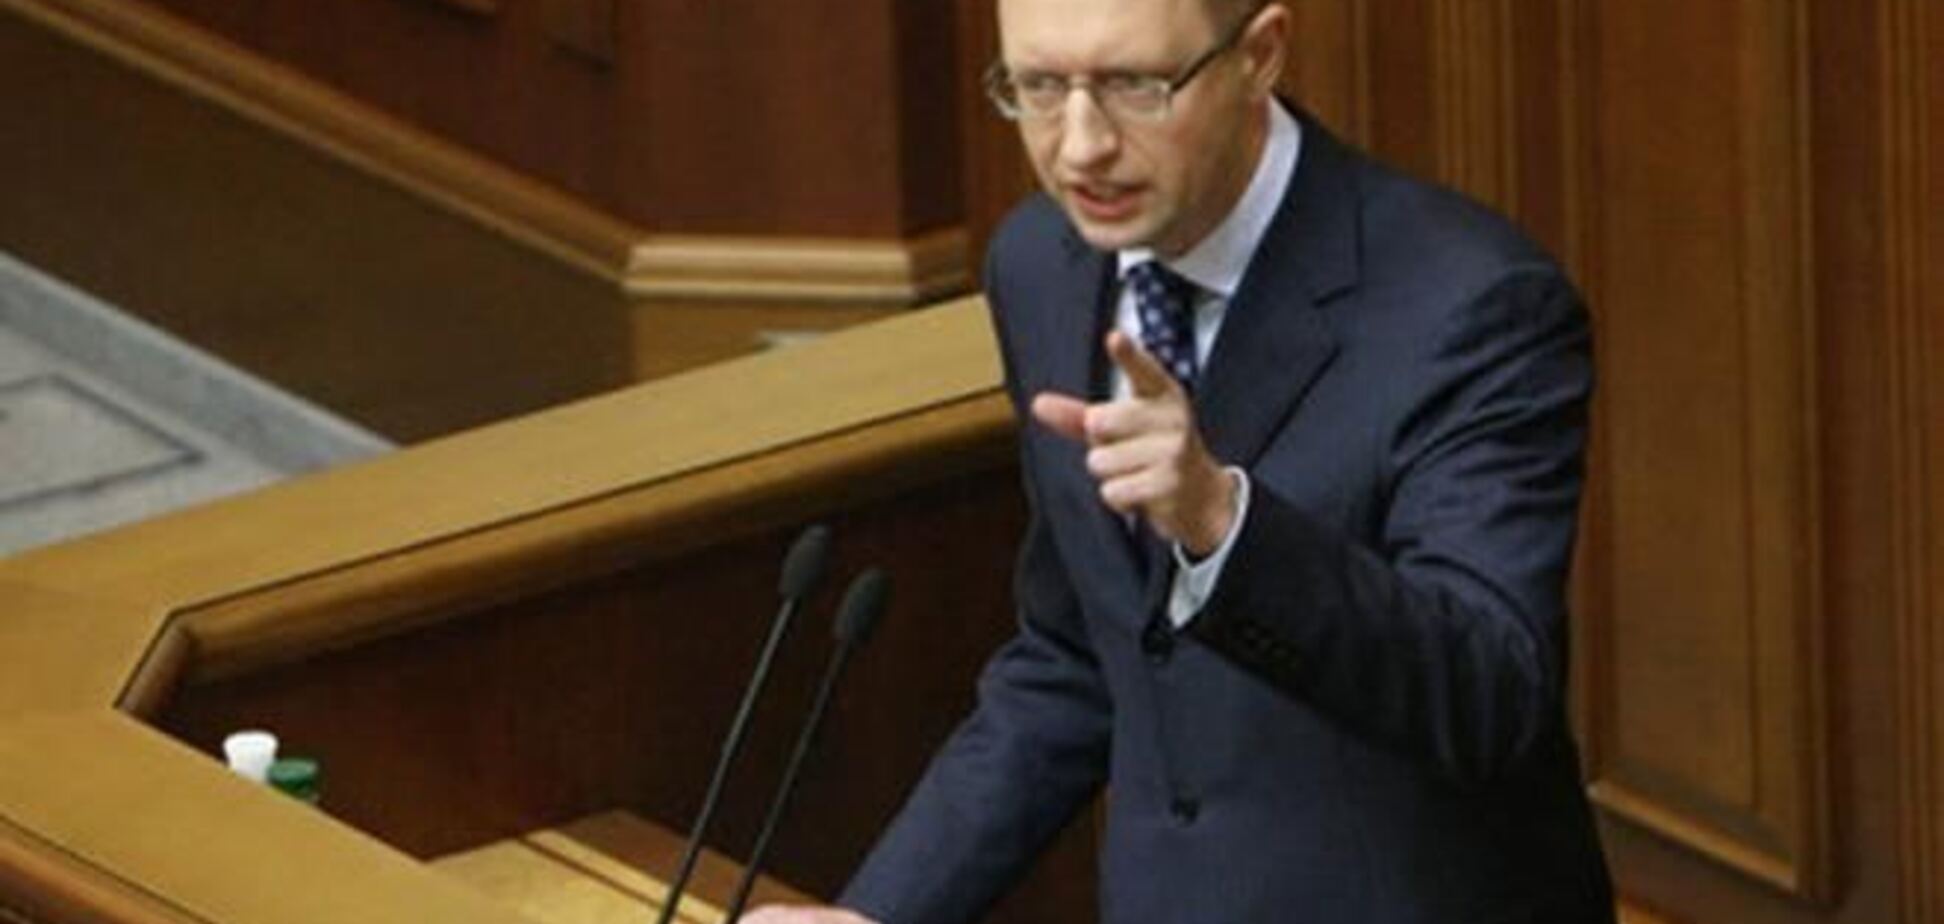 Яценюк требует голосования по Конституции, Рыбак говорит - это невозможно